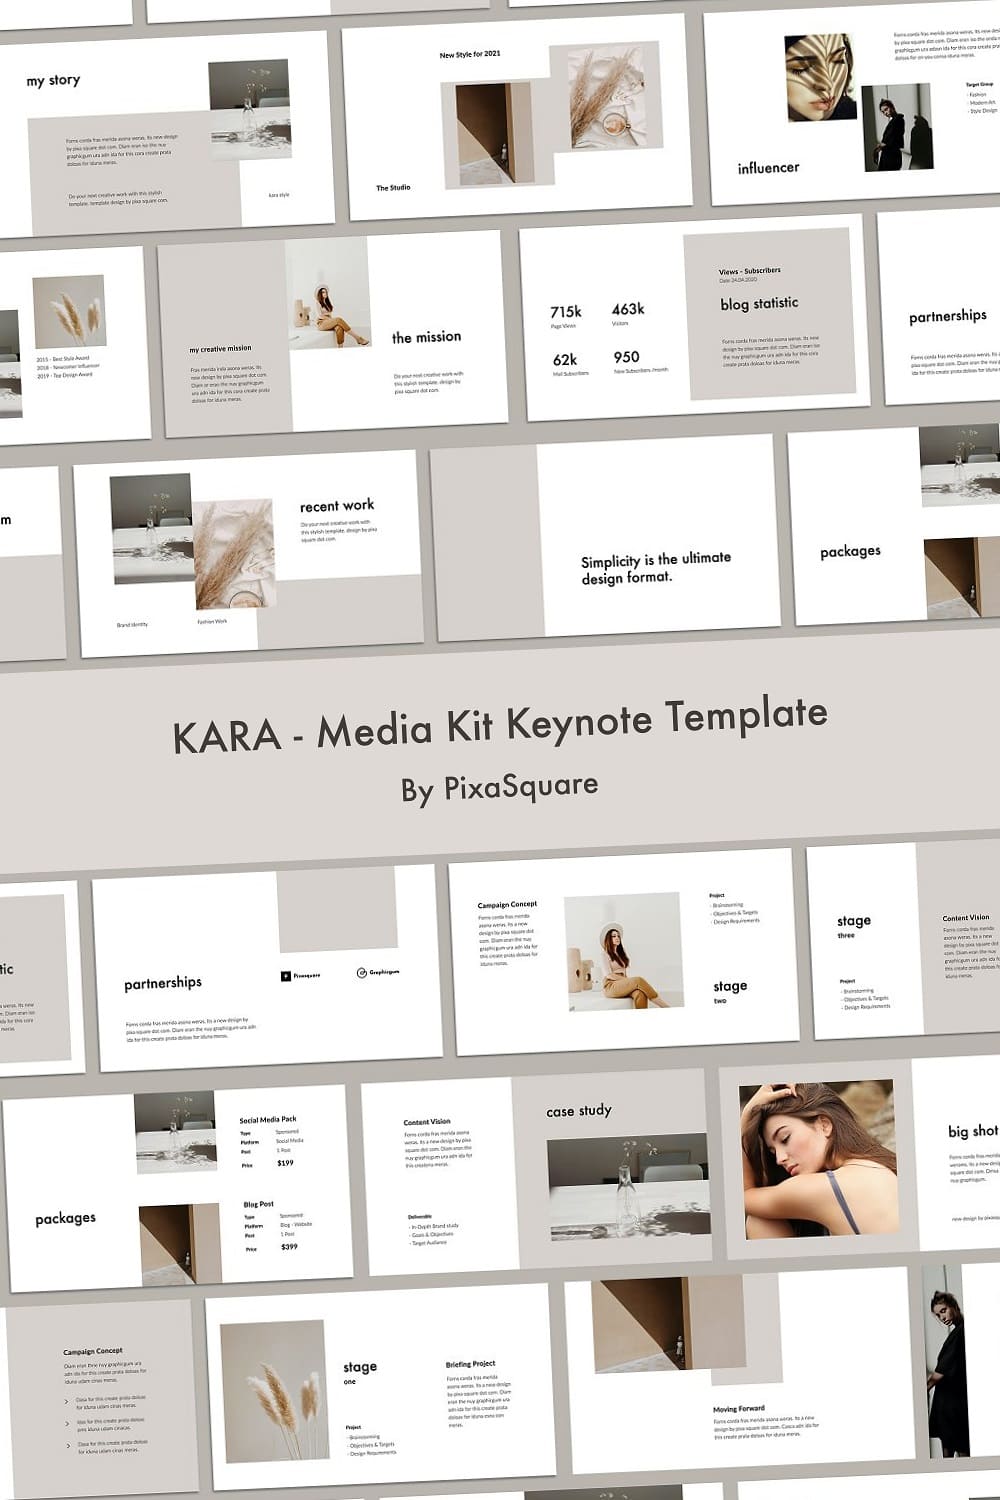 KARA storymedia kit keynote template.